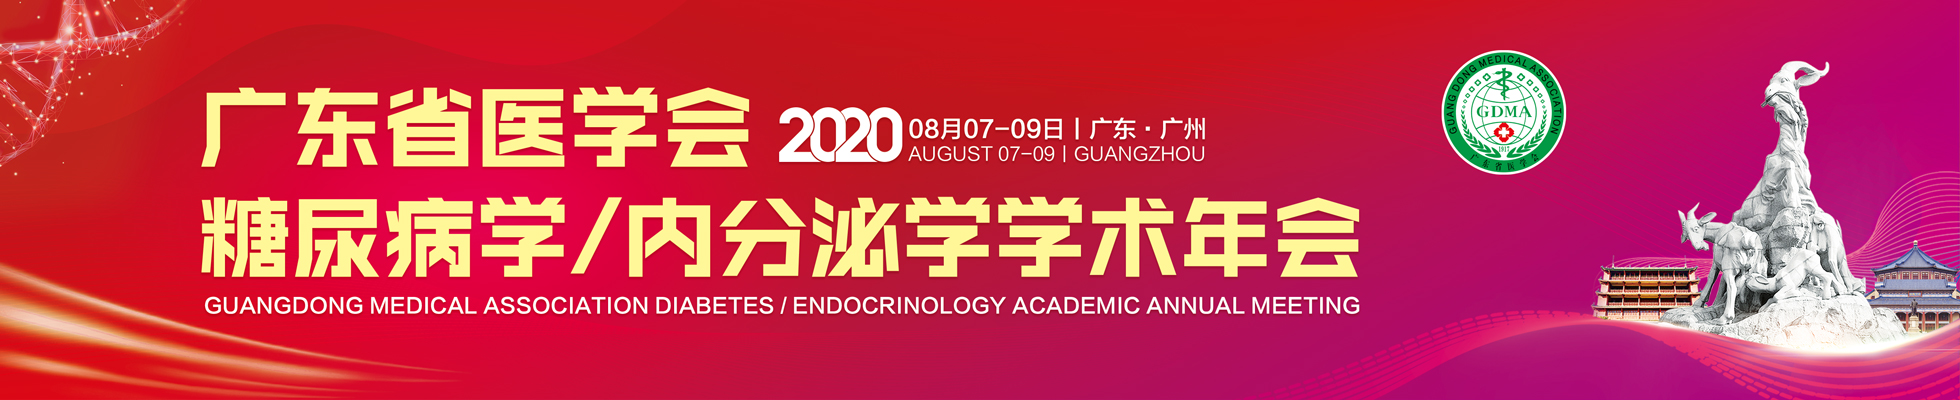 2020年广东省医学会糖尿病学/内分泌学学术年会